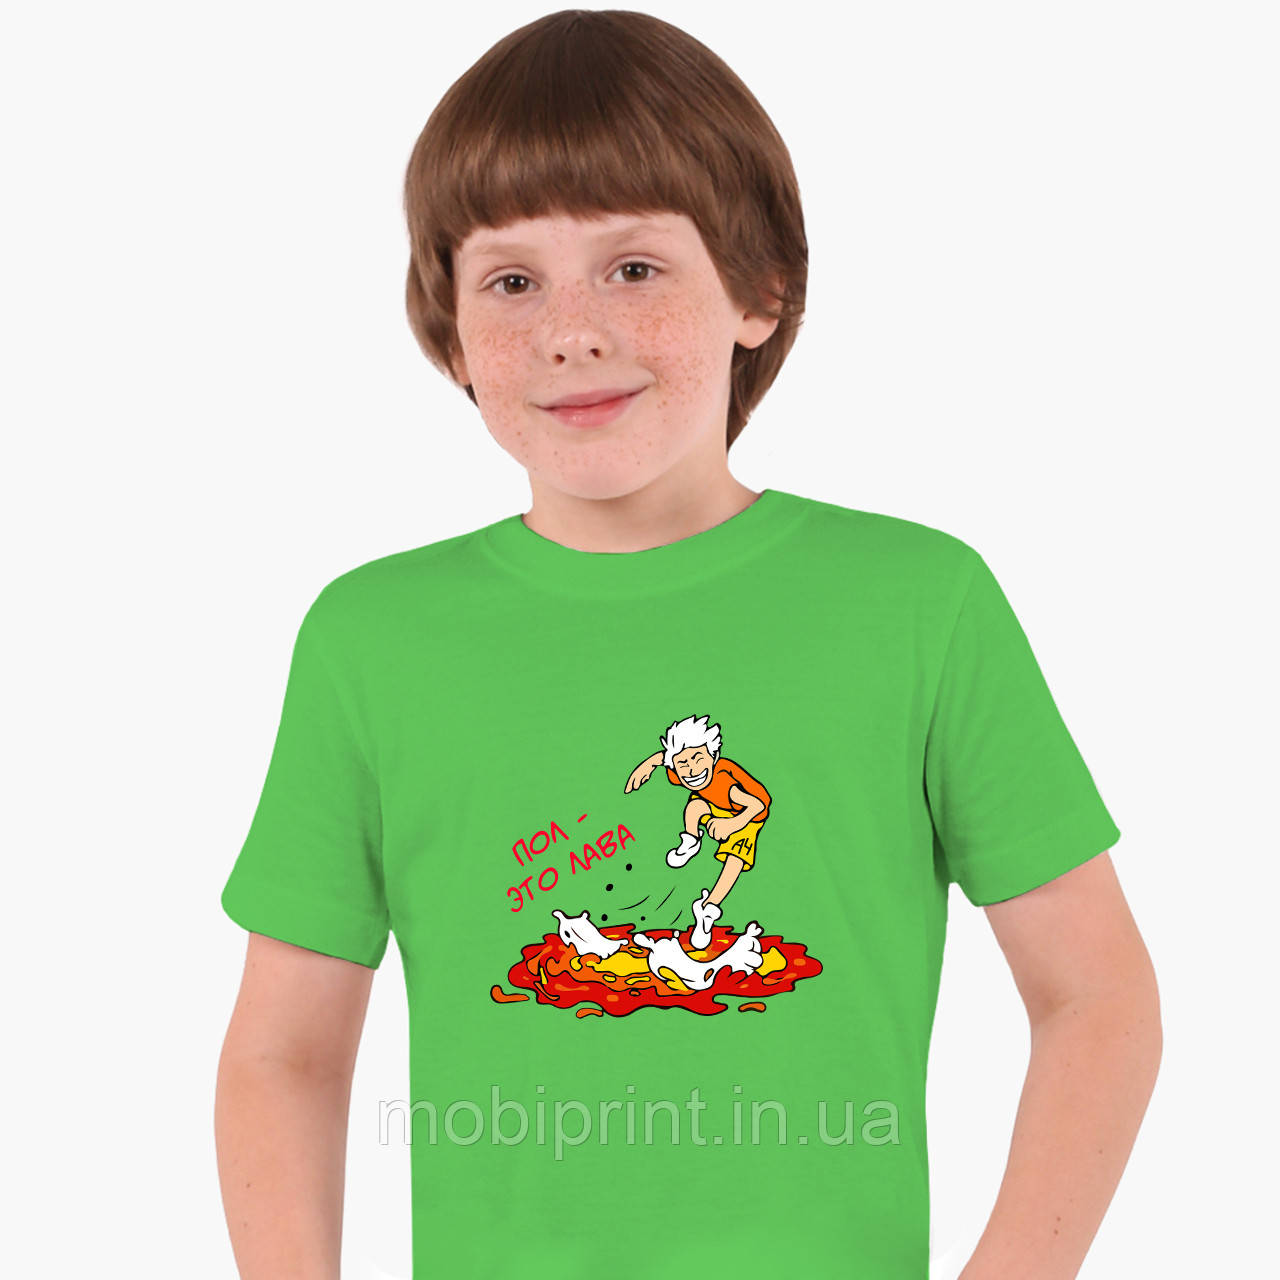 

Детская футболка для мальчиков блогер Влад Бумага А4 Пол это Лава (blogger Vlad A4) Салатовый 158